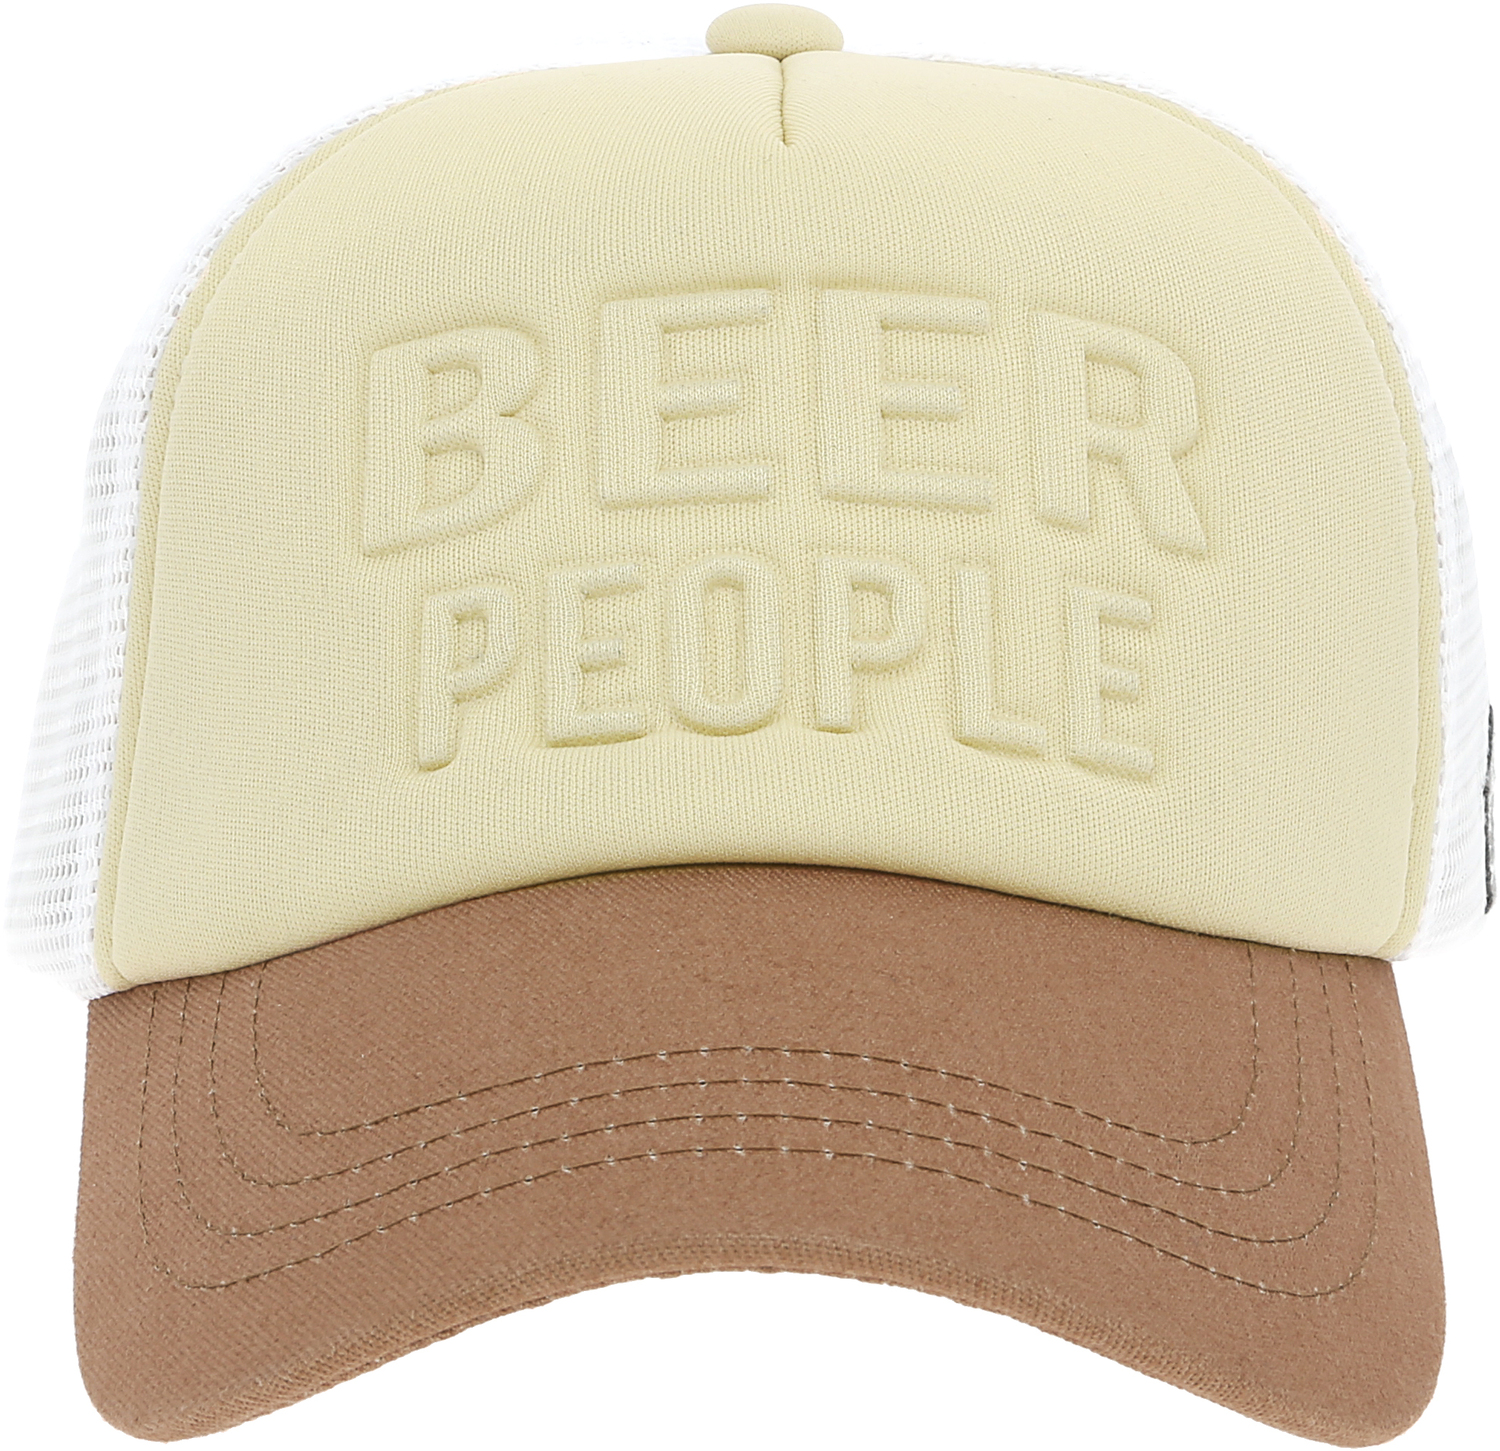 Beer People by We People - Beer People - Adjustable Khaki Neoprene Mesh Hat